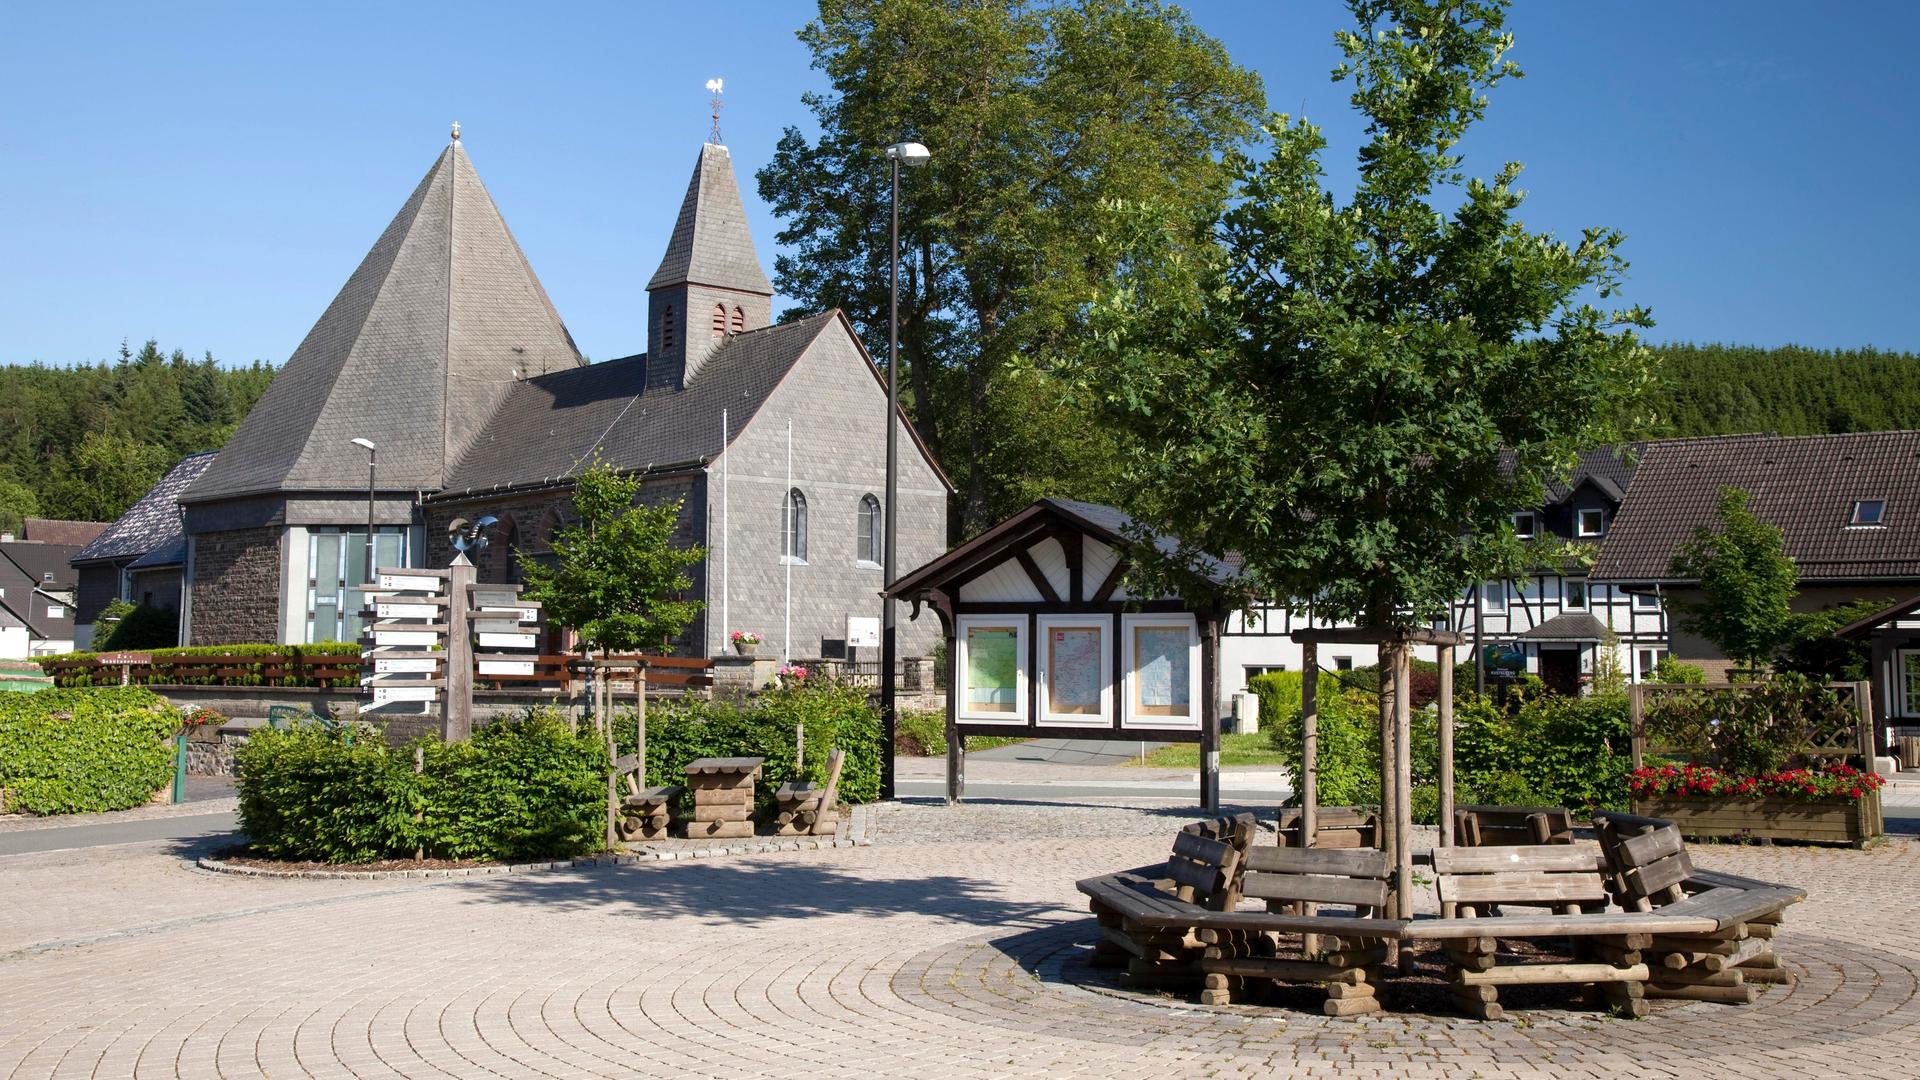 Dorfplatz von Küstelberg, Ortsteil der Kleinstadt Medebach im Sauerland